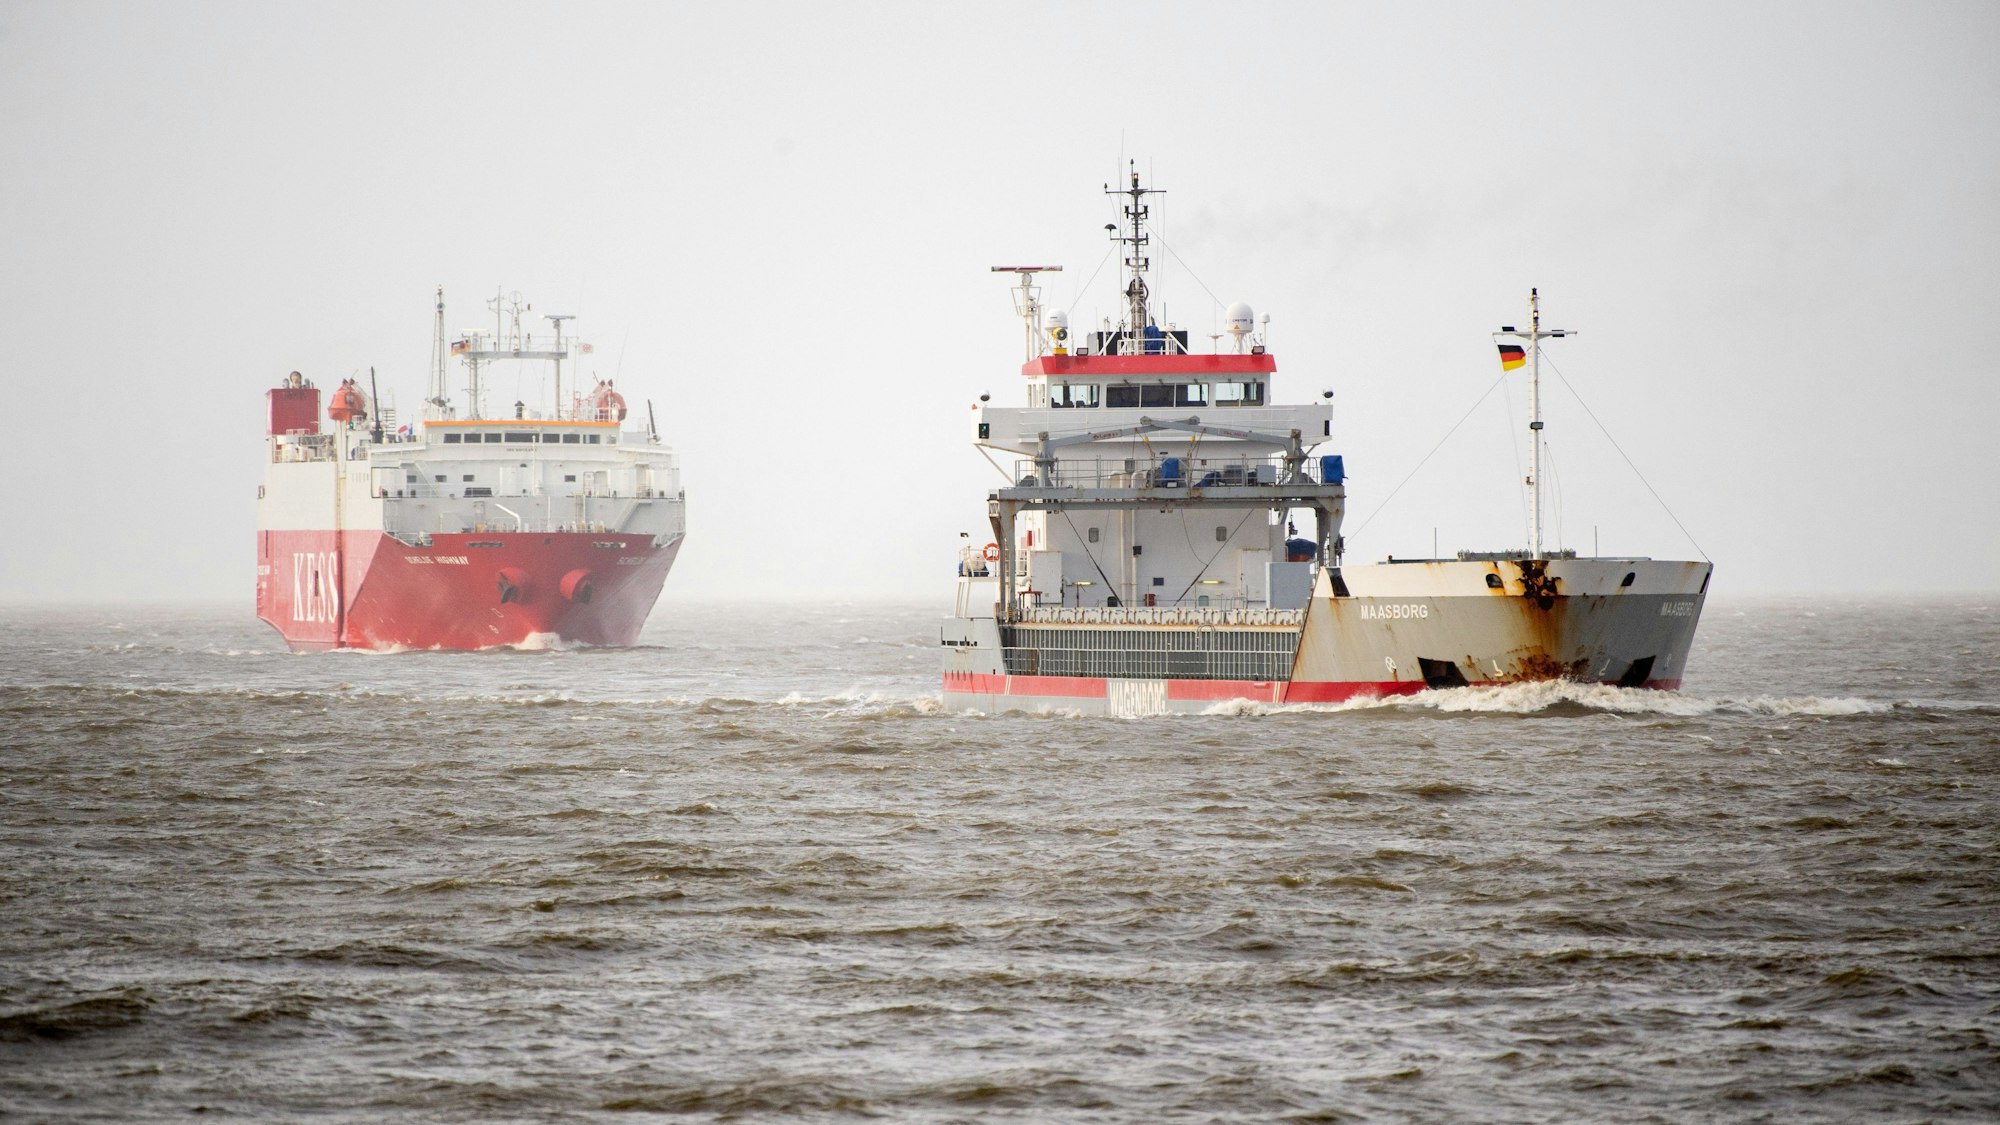 Zwei Schiffe bei stürmischem Wetter auf dem Meer. (Symbolbild)